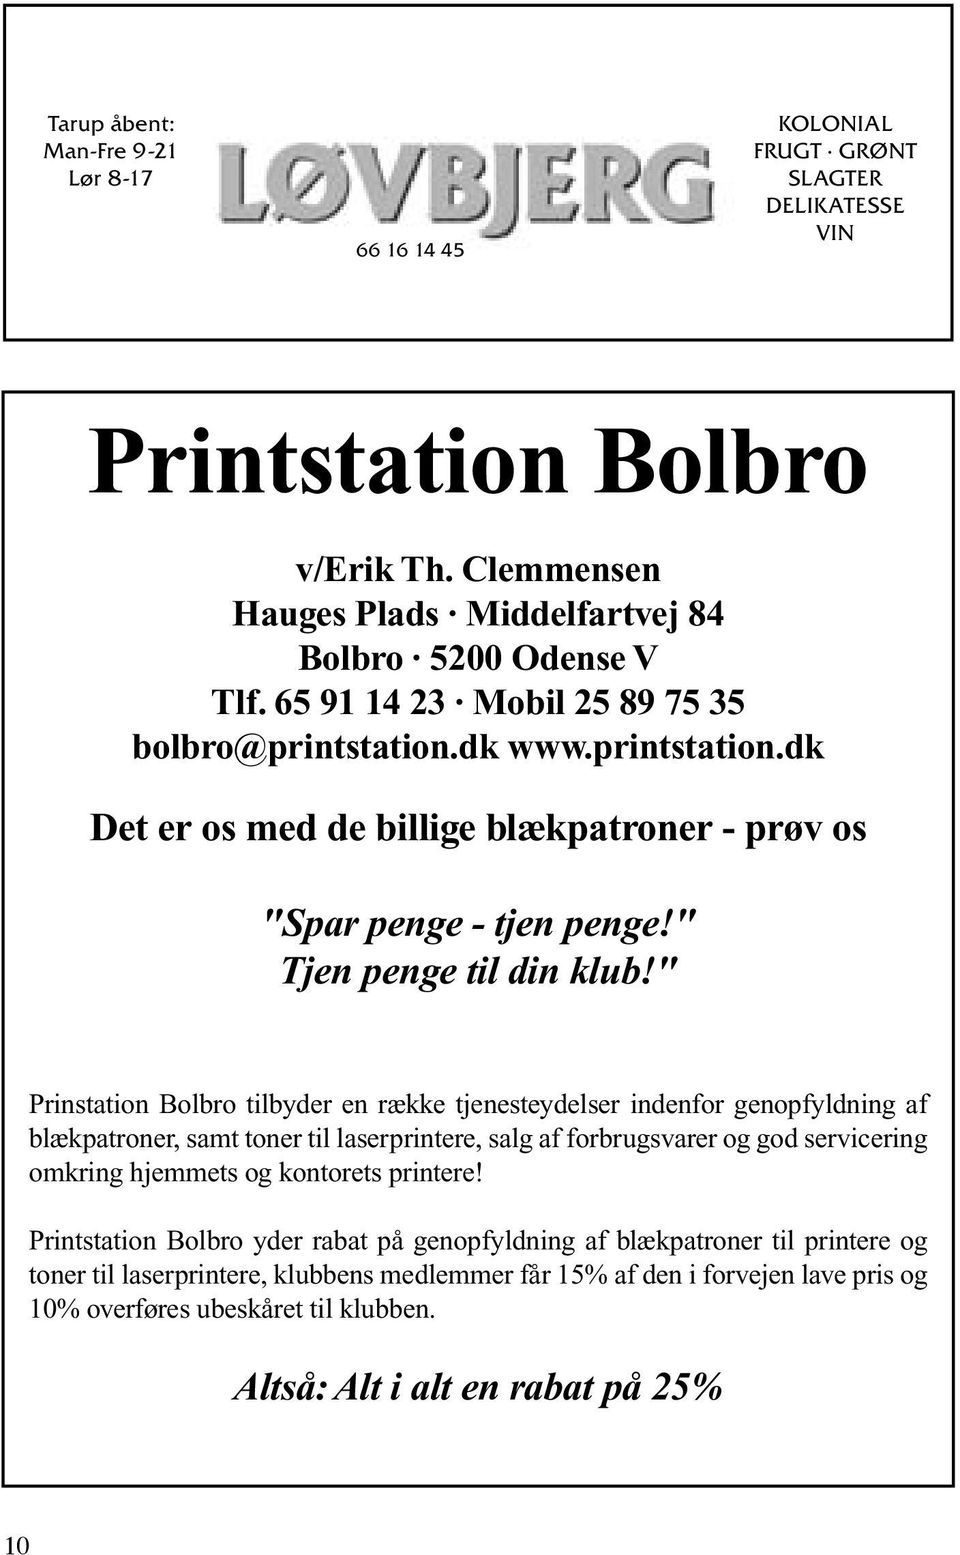 " Prinstation Bolbro tilbyder en række tjenesteydelser indenfor genopfyldning af blækpatroner, samt toner til laserprintere, salg af forbrugsvarer og god servicering omkring hjemmets og kontorets